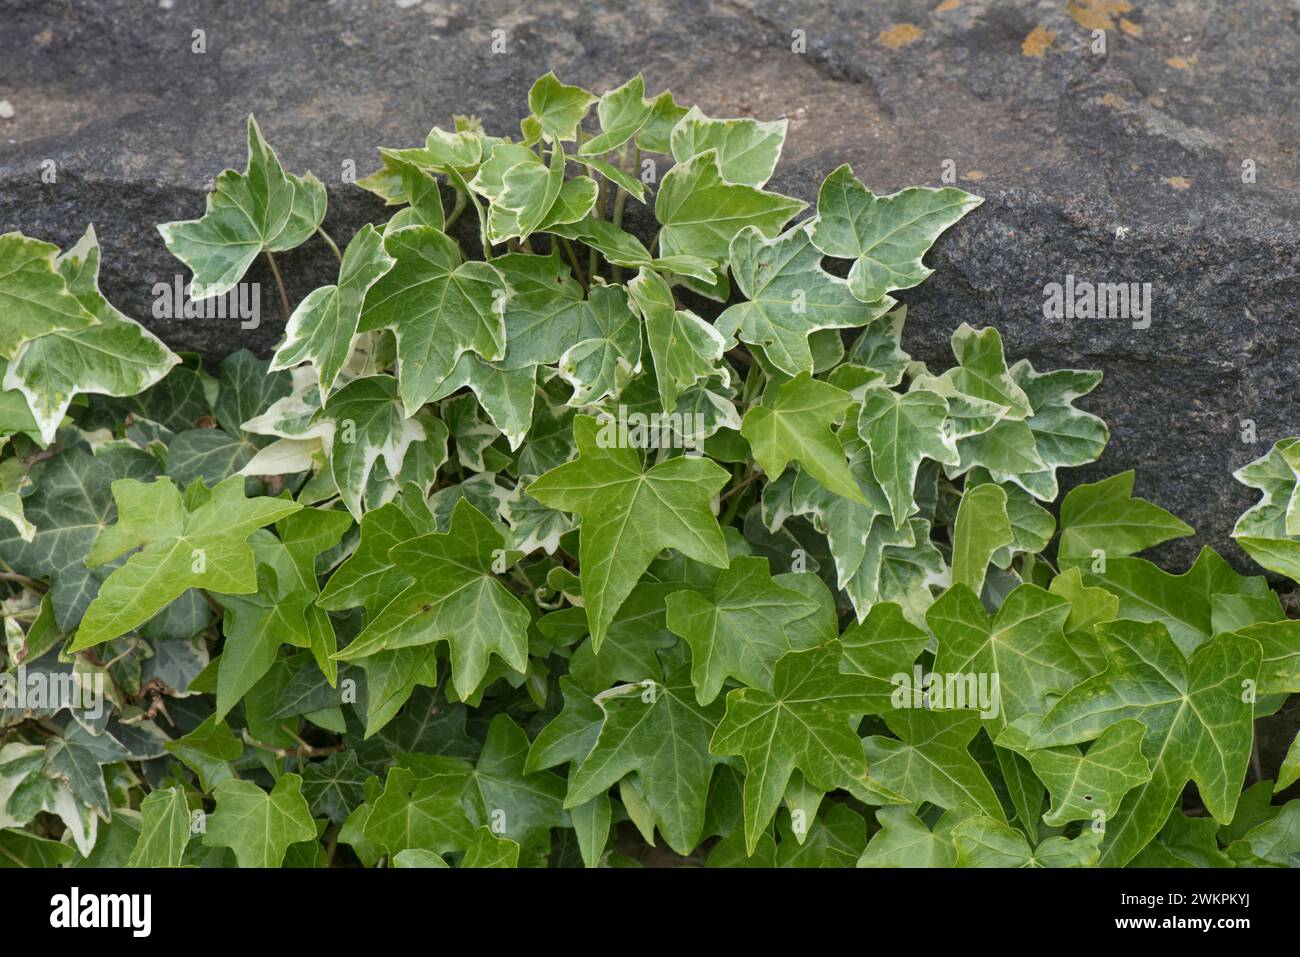 Lierre panaché (Hedera Helix) avec des bords crème sur les feuilles et des feuilles vertes inversées sur la même plante poussant sur des rochers dans un jardin, mai Banque D'Images